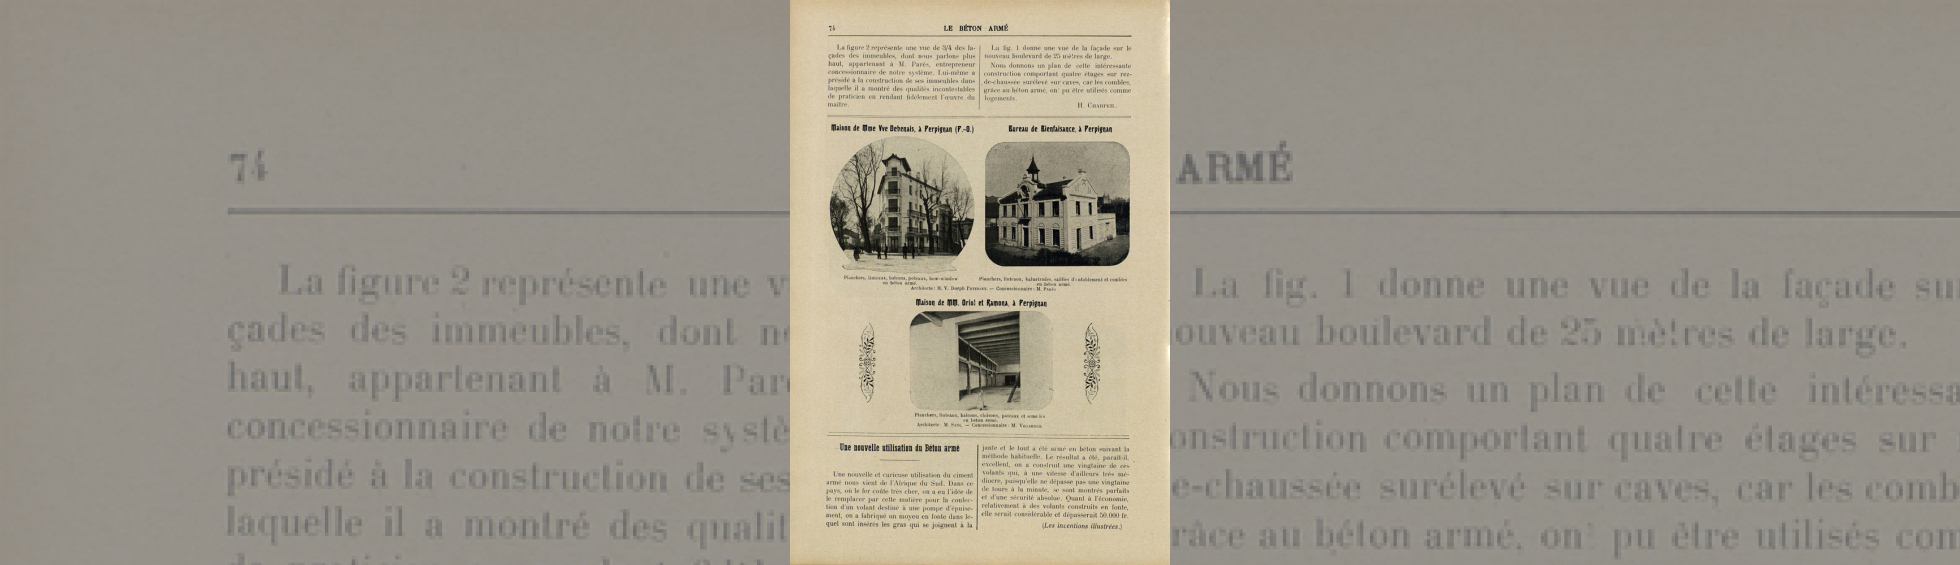 Revue mensuelle Le béton armé, 1909 (12e année), mai (n° 132), p. 73-74.